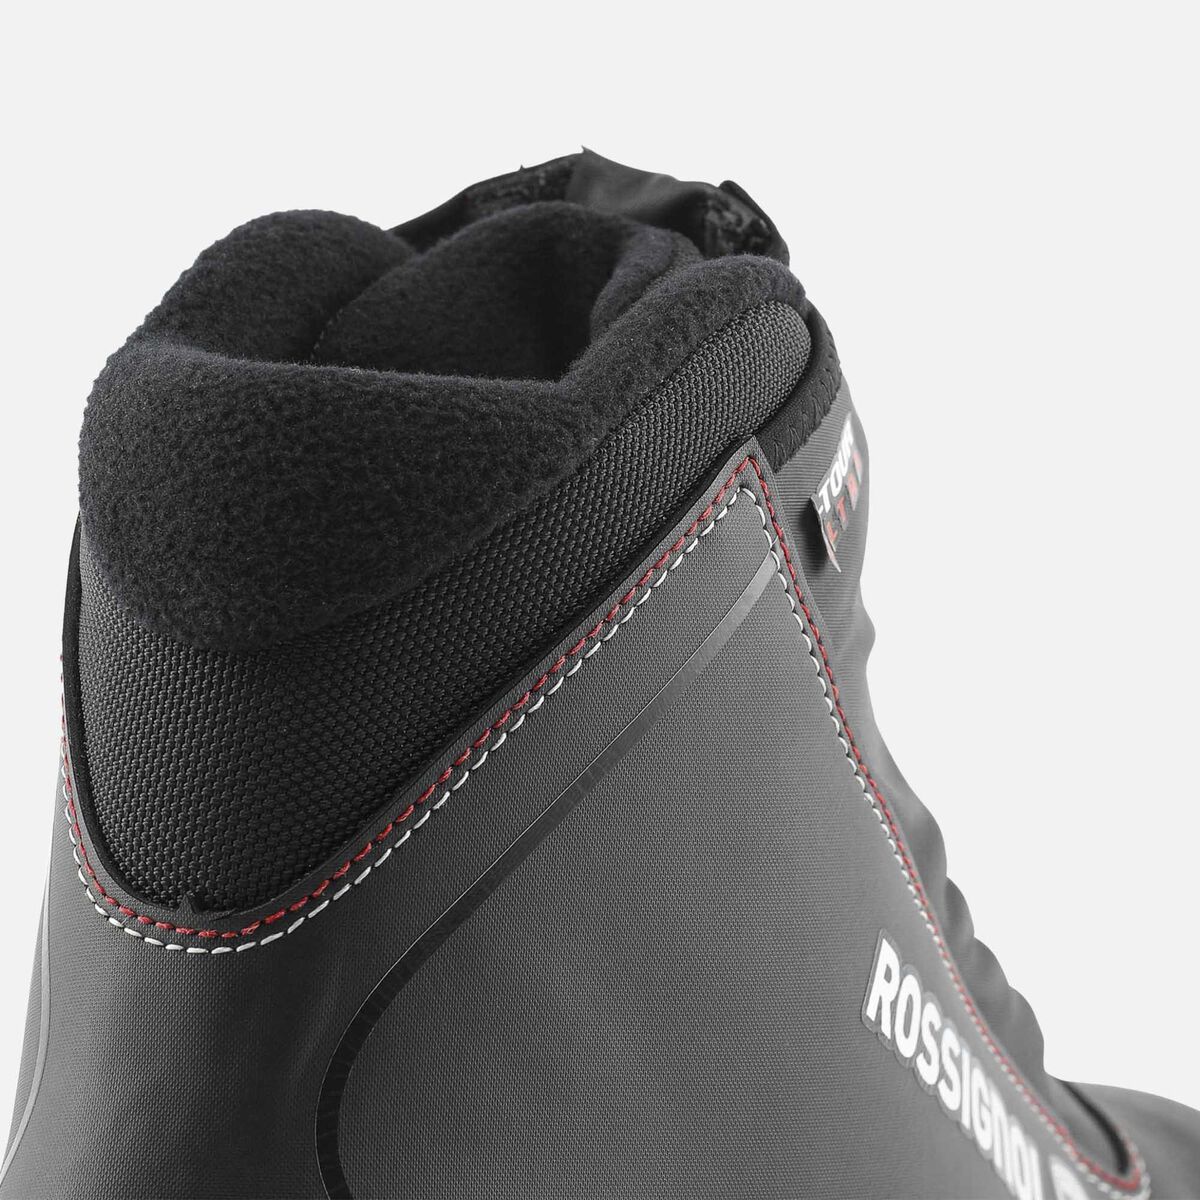 Chaussures de ski nordique Touring Unisexe X-Tour Ultra